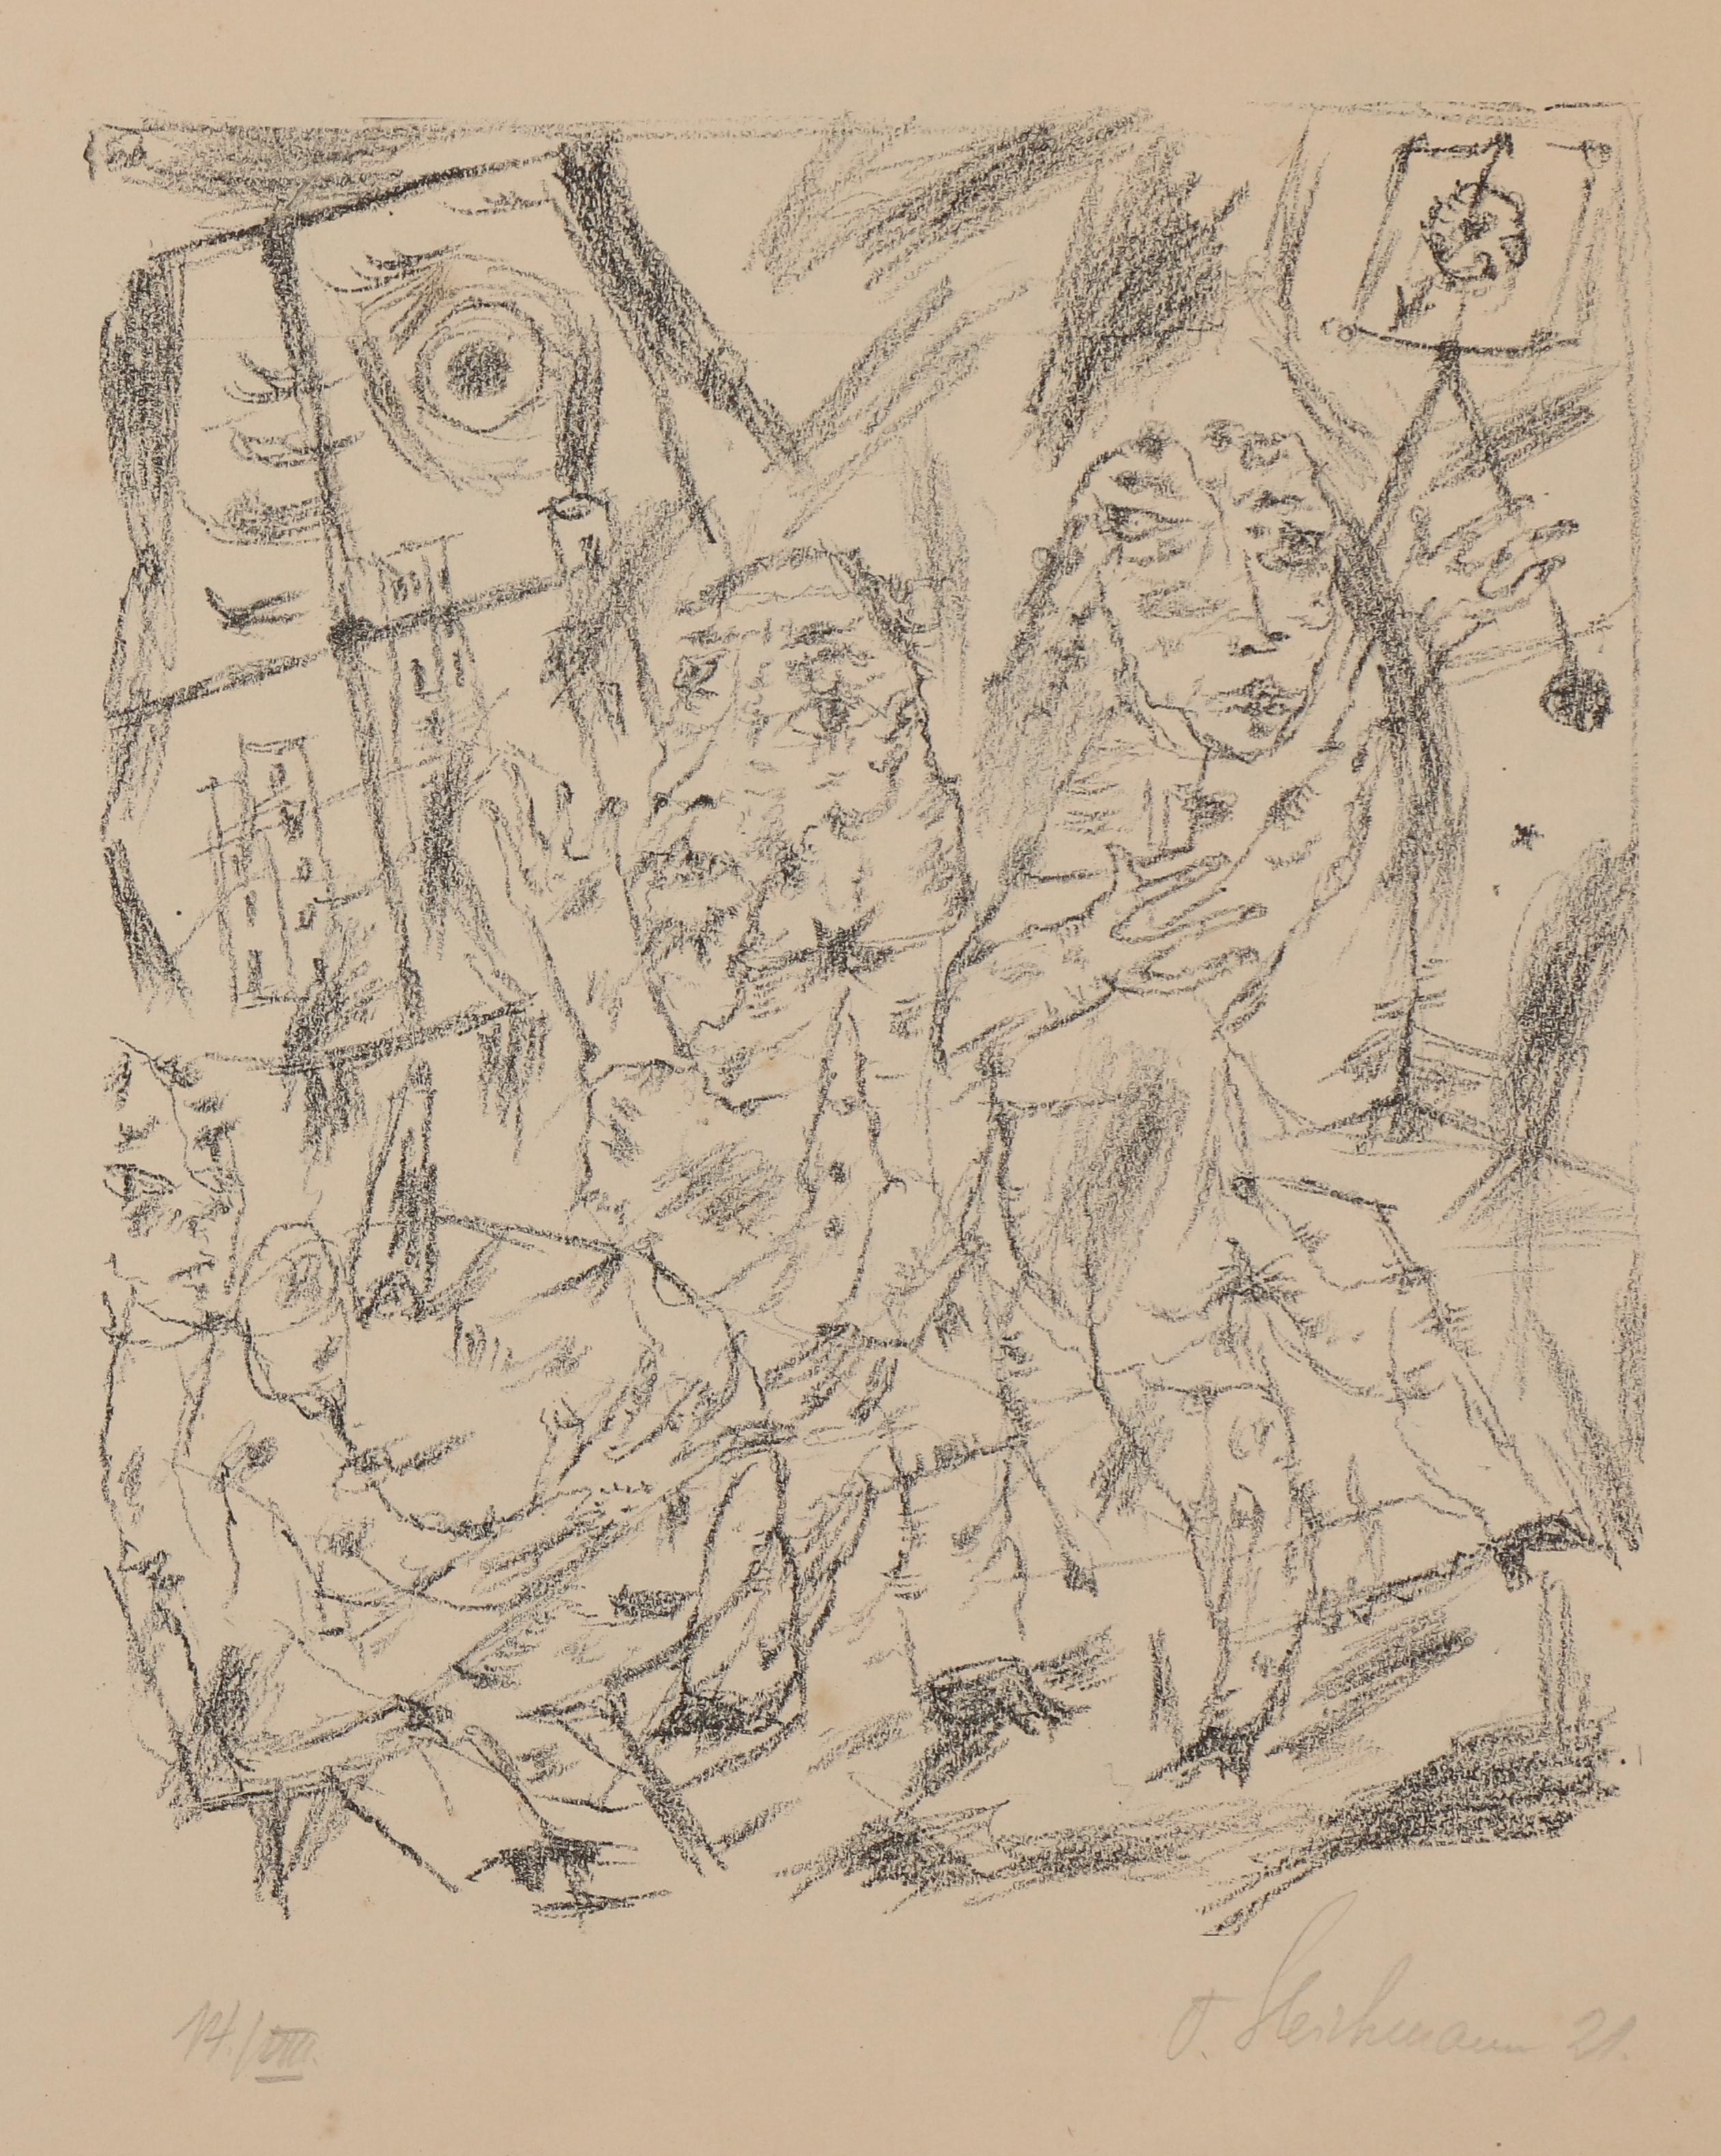 'Chimären, 8 steinzeichnungen' by Otto Gleichmann, 1921